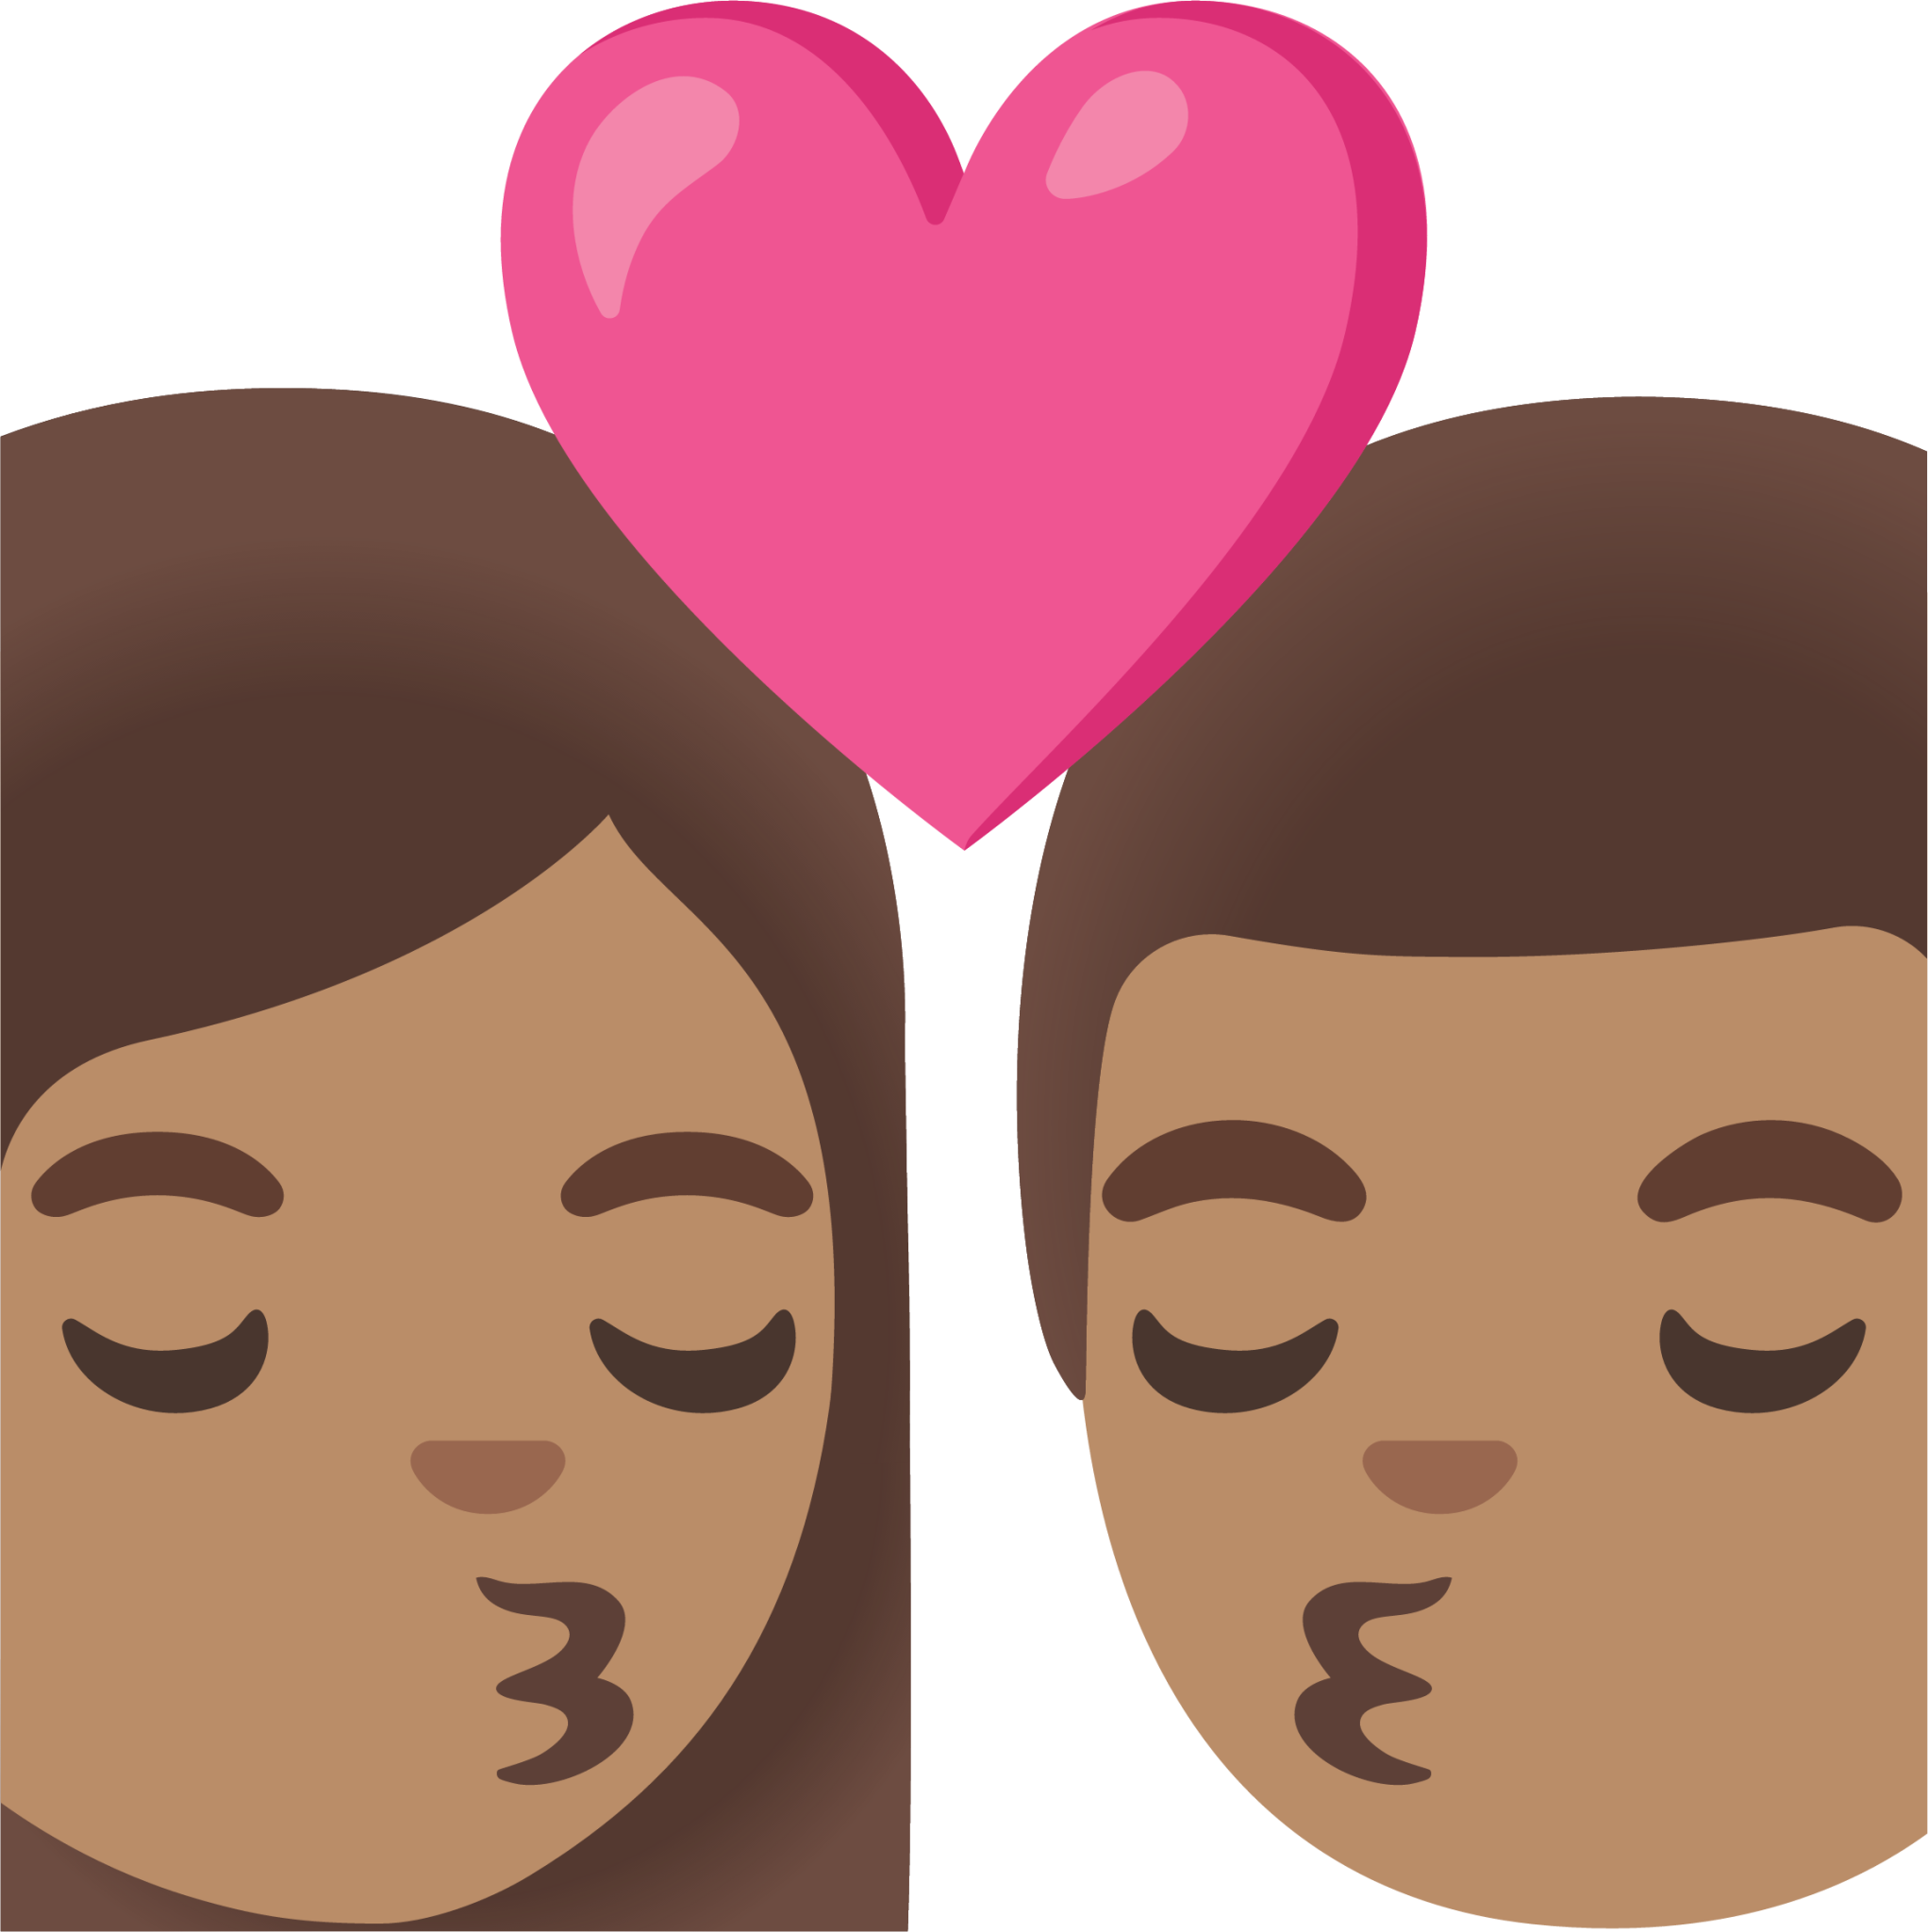 kiss: woman, man, medium skin tone emoji